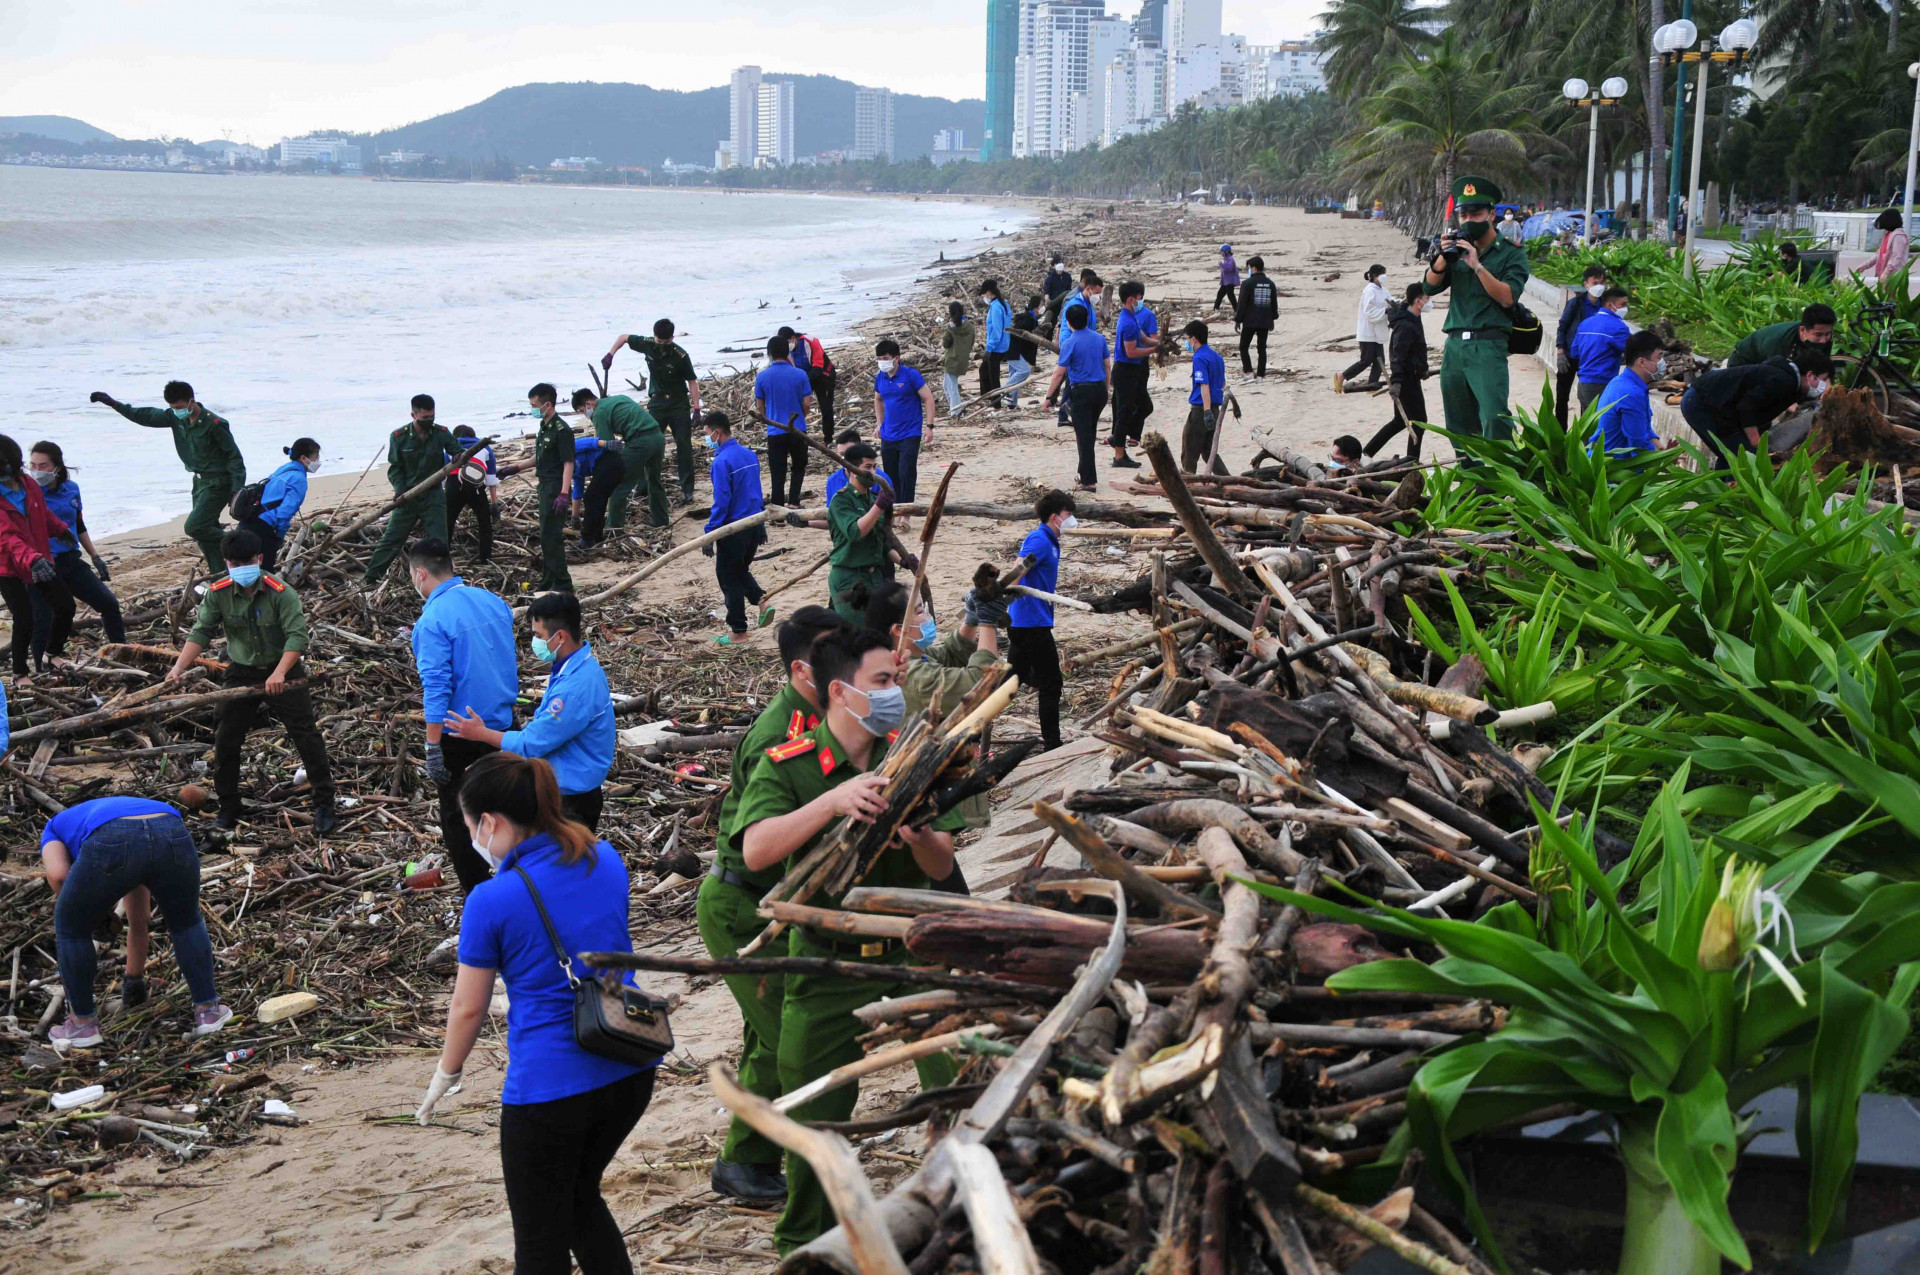 Hoạt động đã huy động hơn 500 đoàn viên, thanh niên tham gia thu gom rác, thân cây lớn dọc bãi biển kéo dài từ công viên Thanh niên đến khu vực nhà hàng Yến sào Khánh Hoà